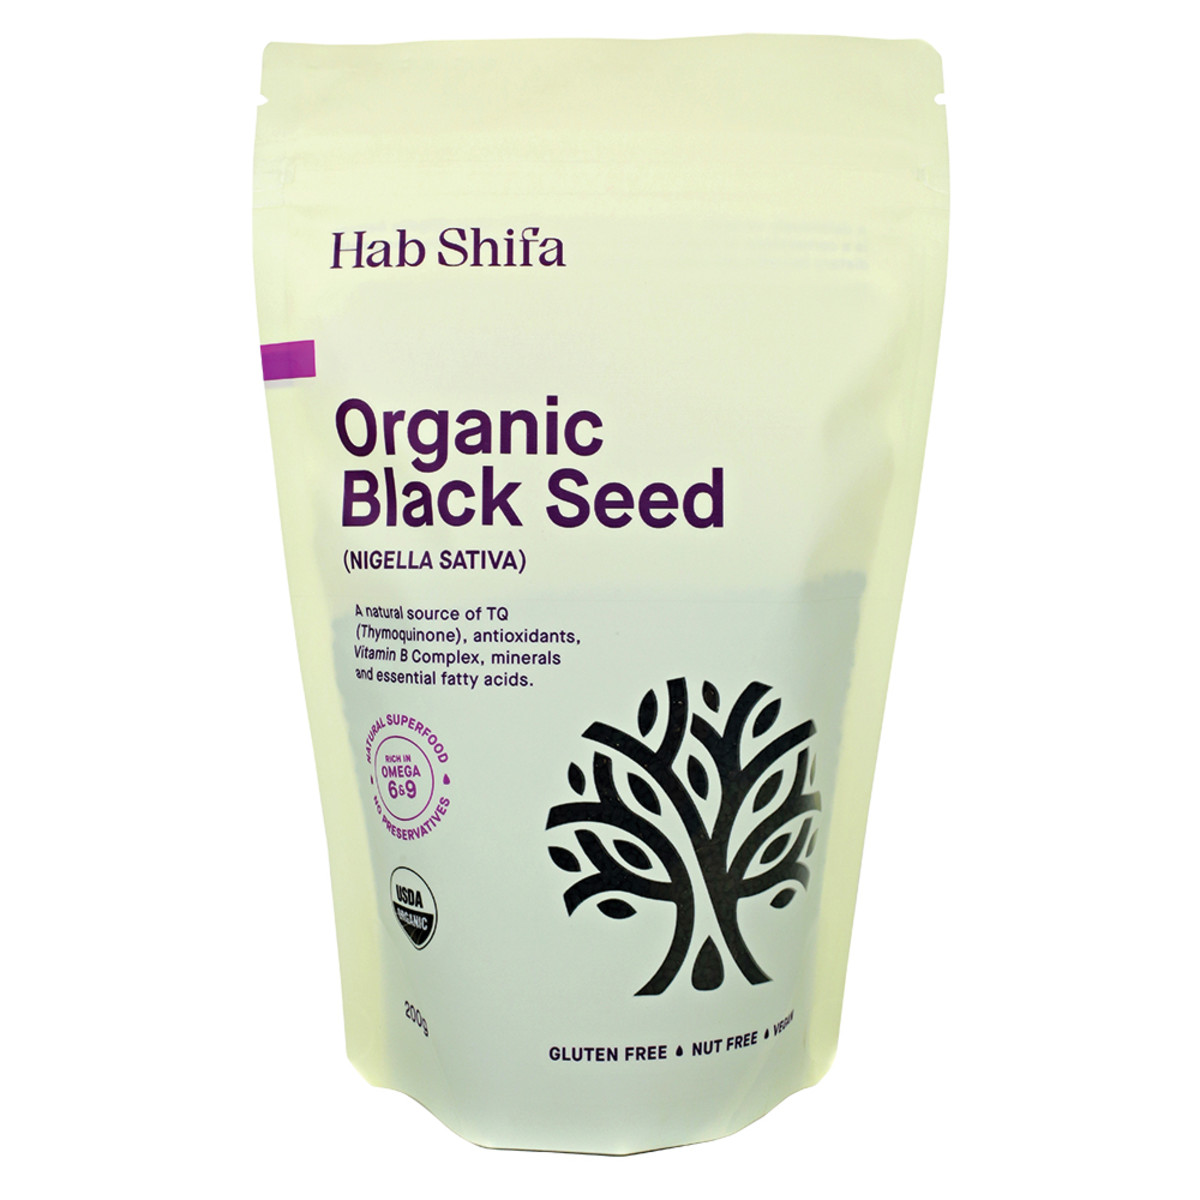 HAB SHIFA - Organic Black Seed